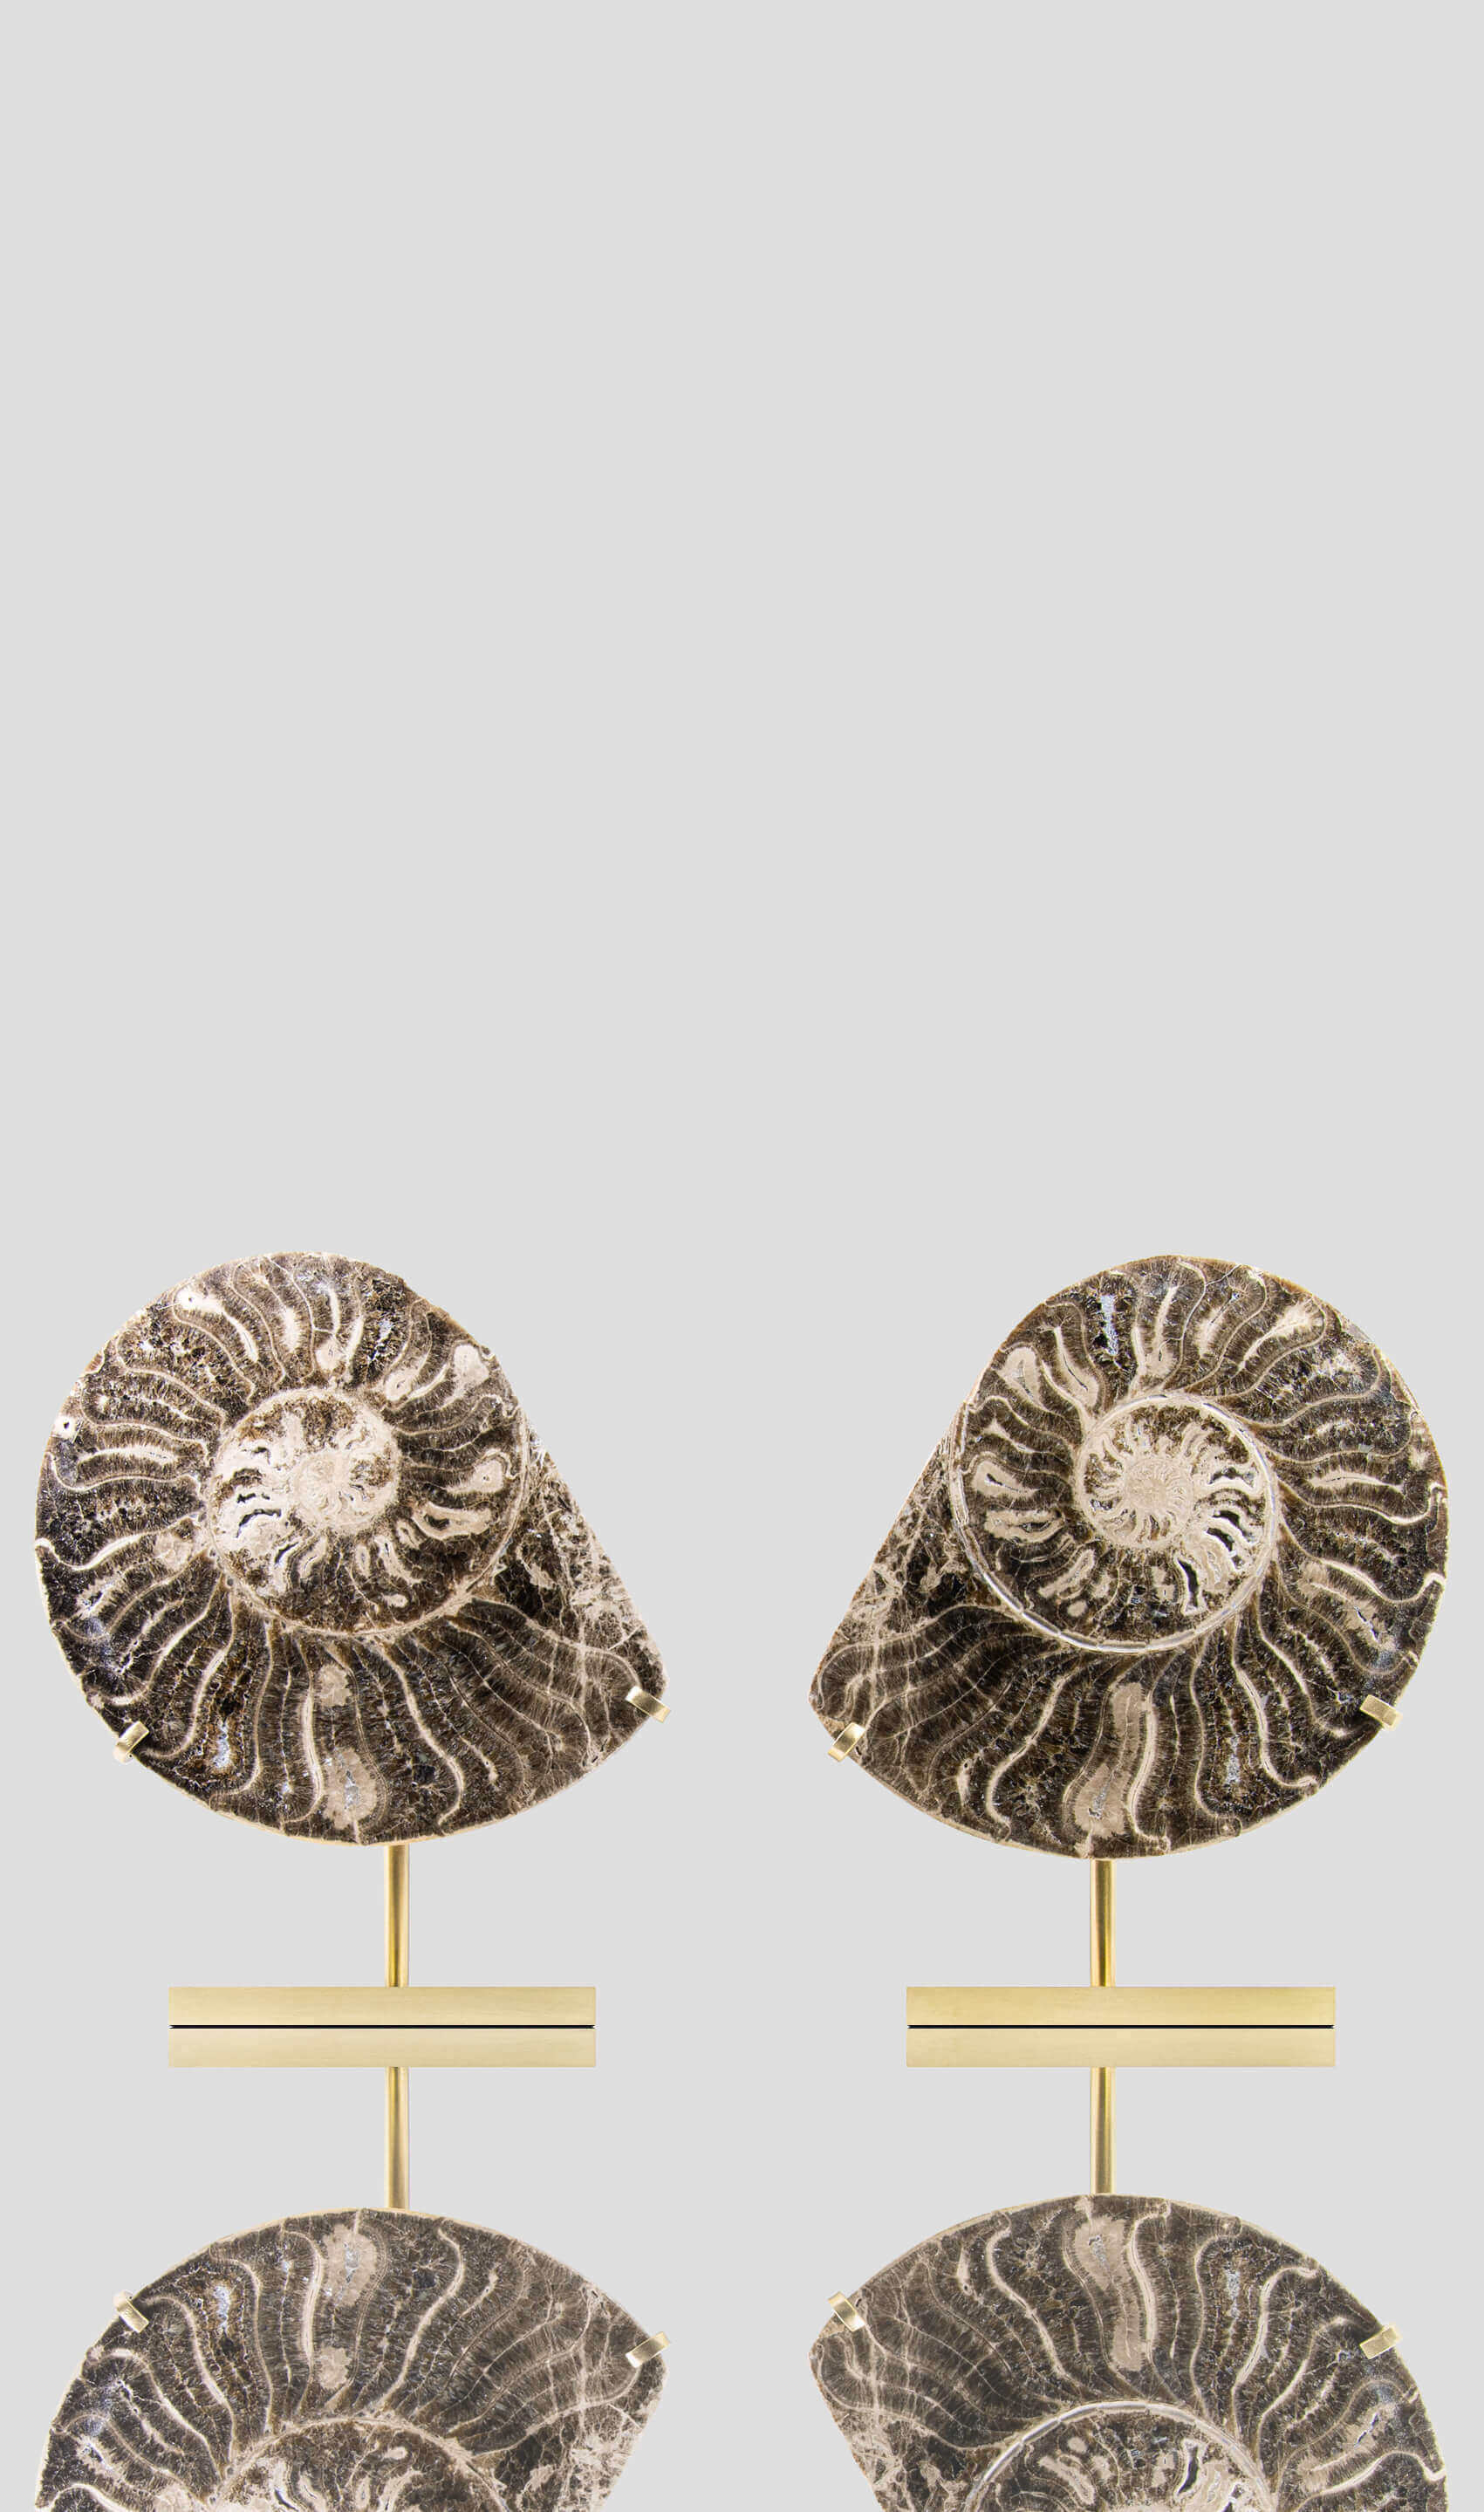 Hoplitoides Wohltmanni Ammonite Pair 235mm on brass stand